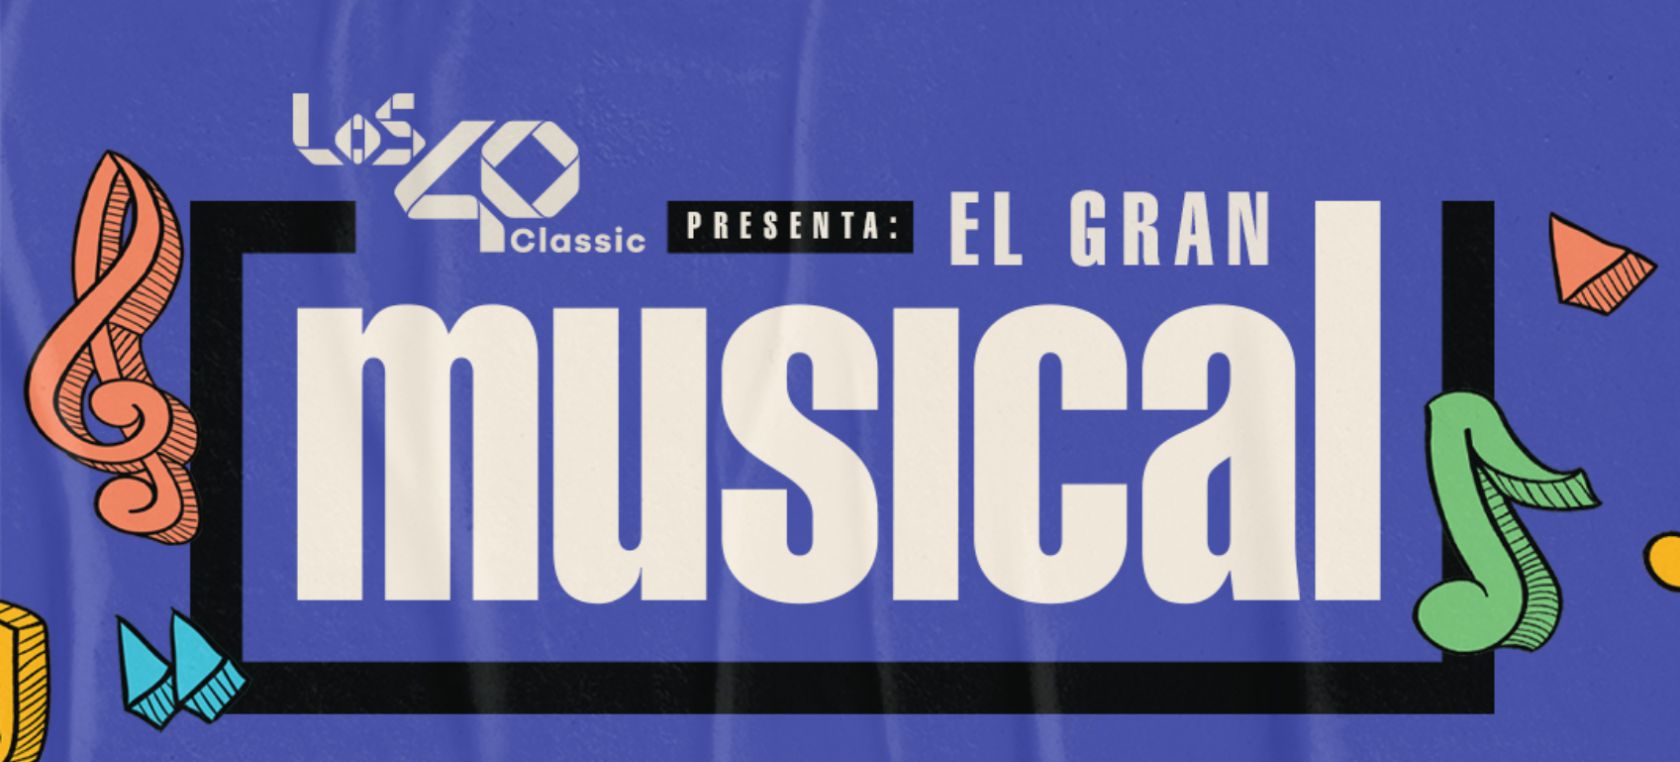 Vuelve El Gran Musical con un concierto de Nacha Pop, La Frontera y Rafa Sánchez